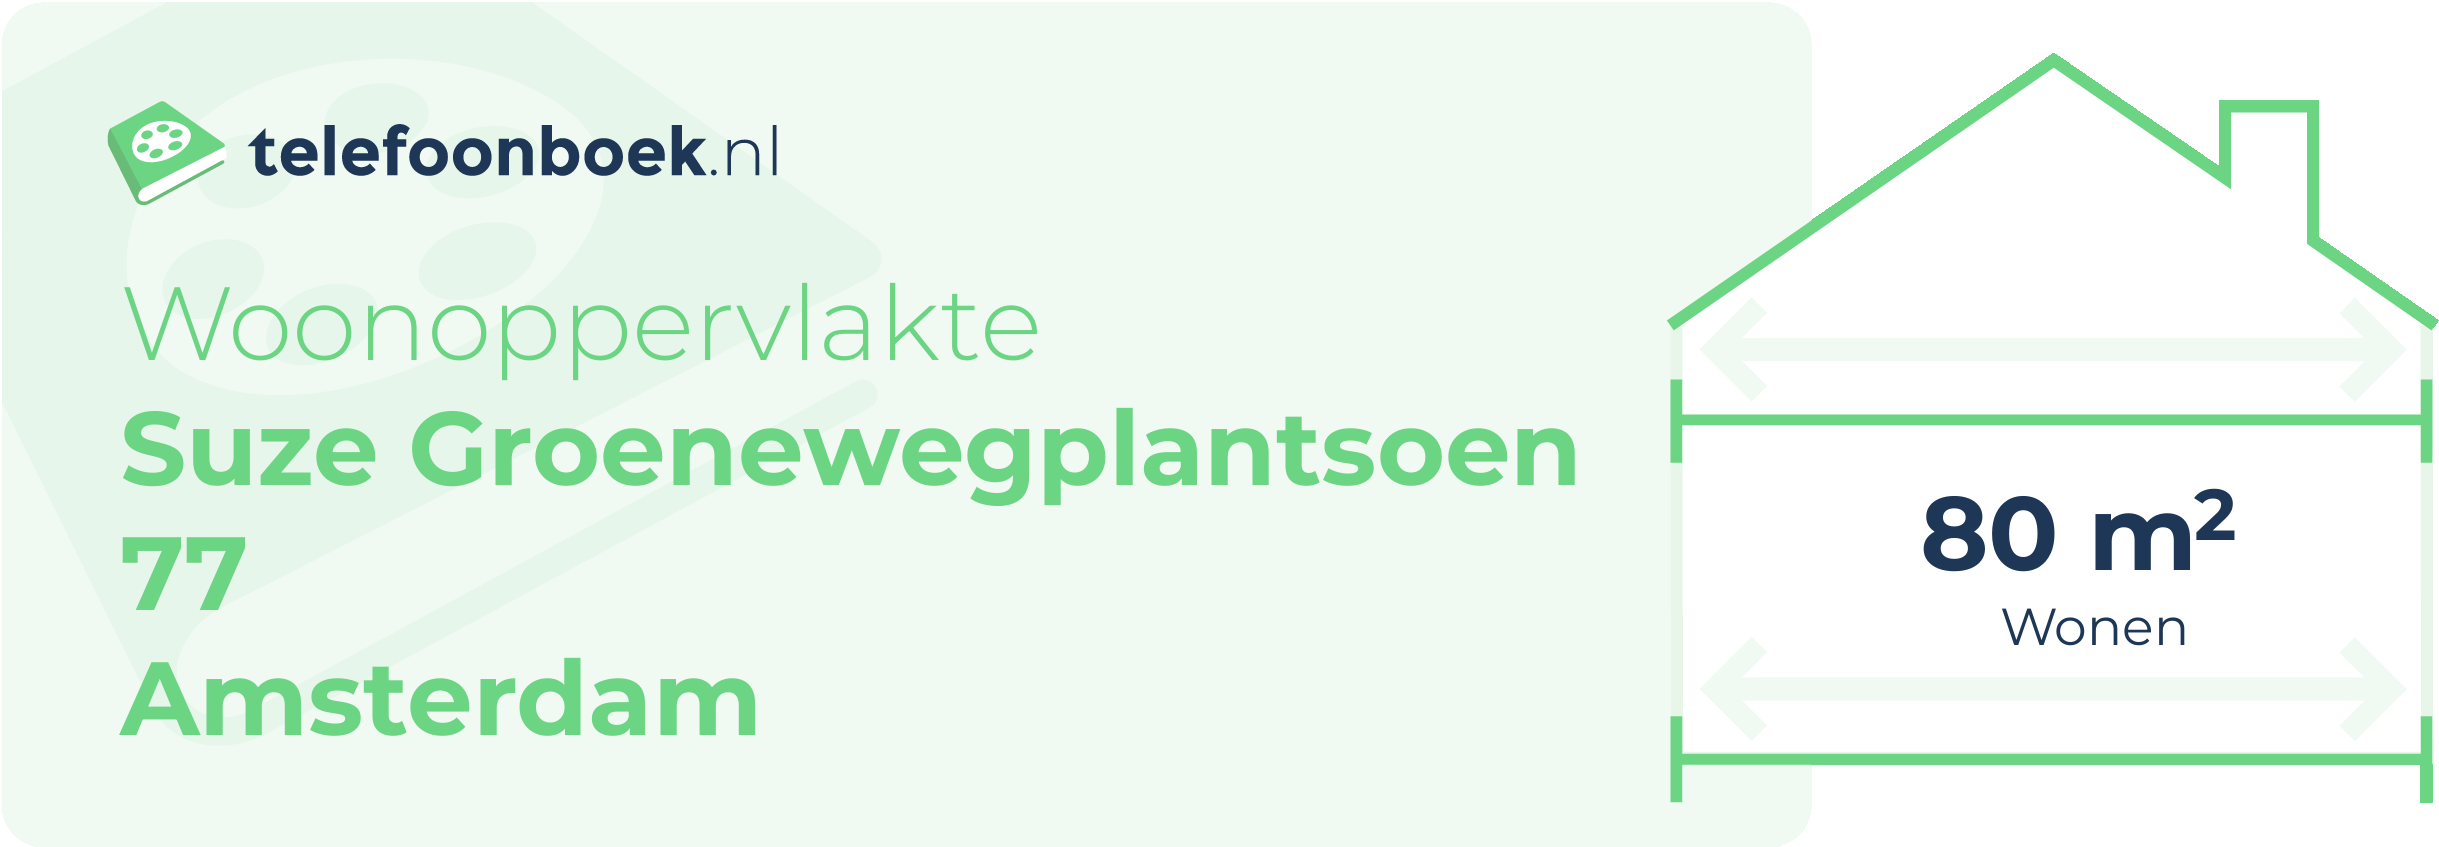 Woonoppervlakte Suze Groenewegplantsoen 77 Amsterdam